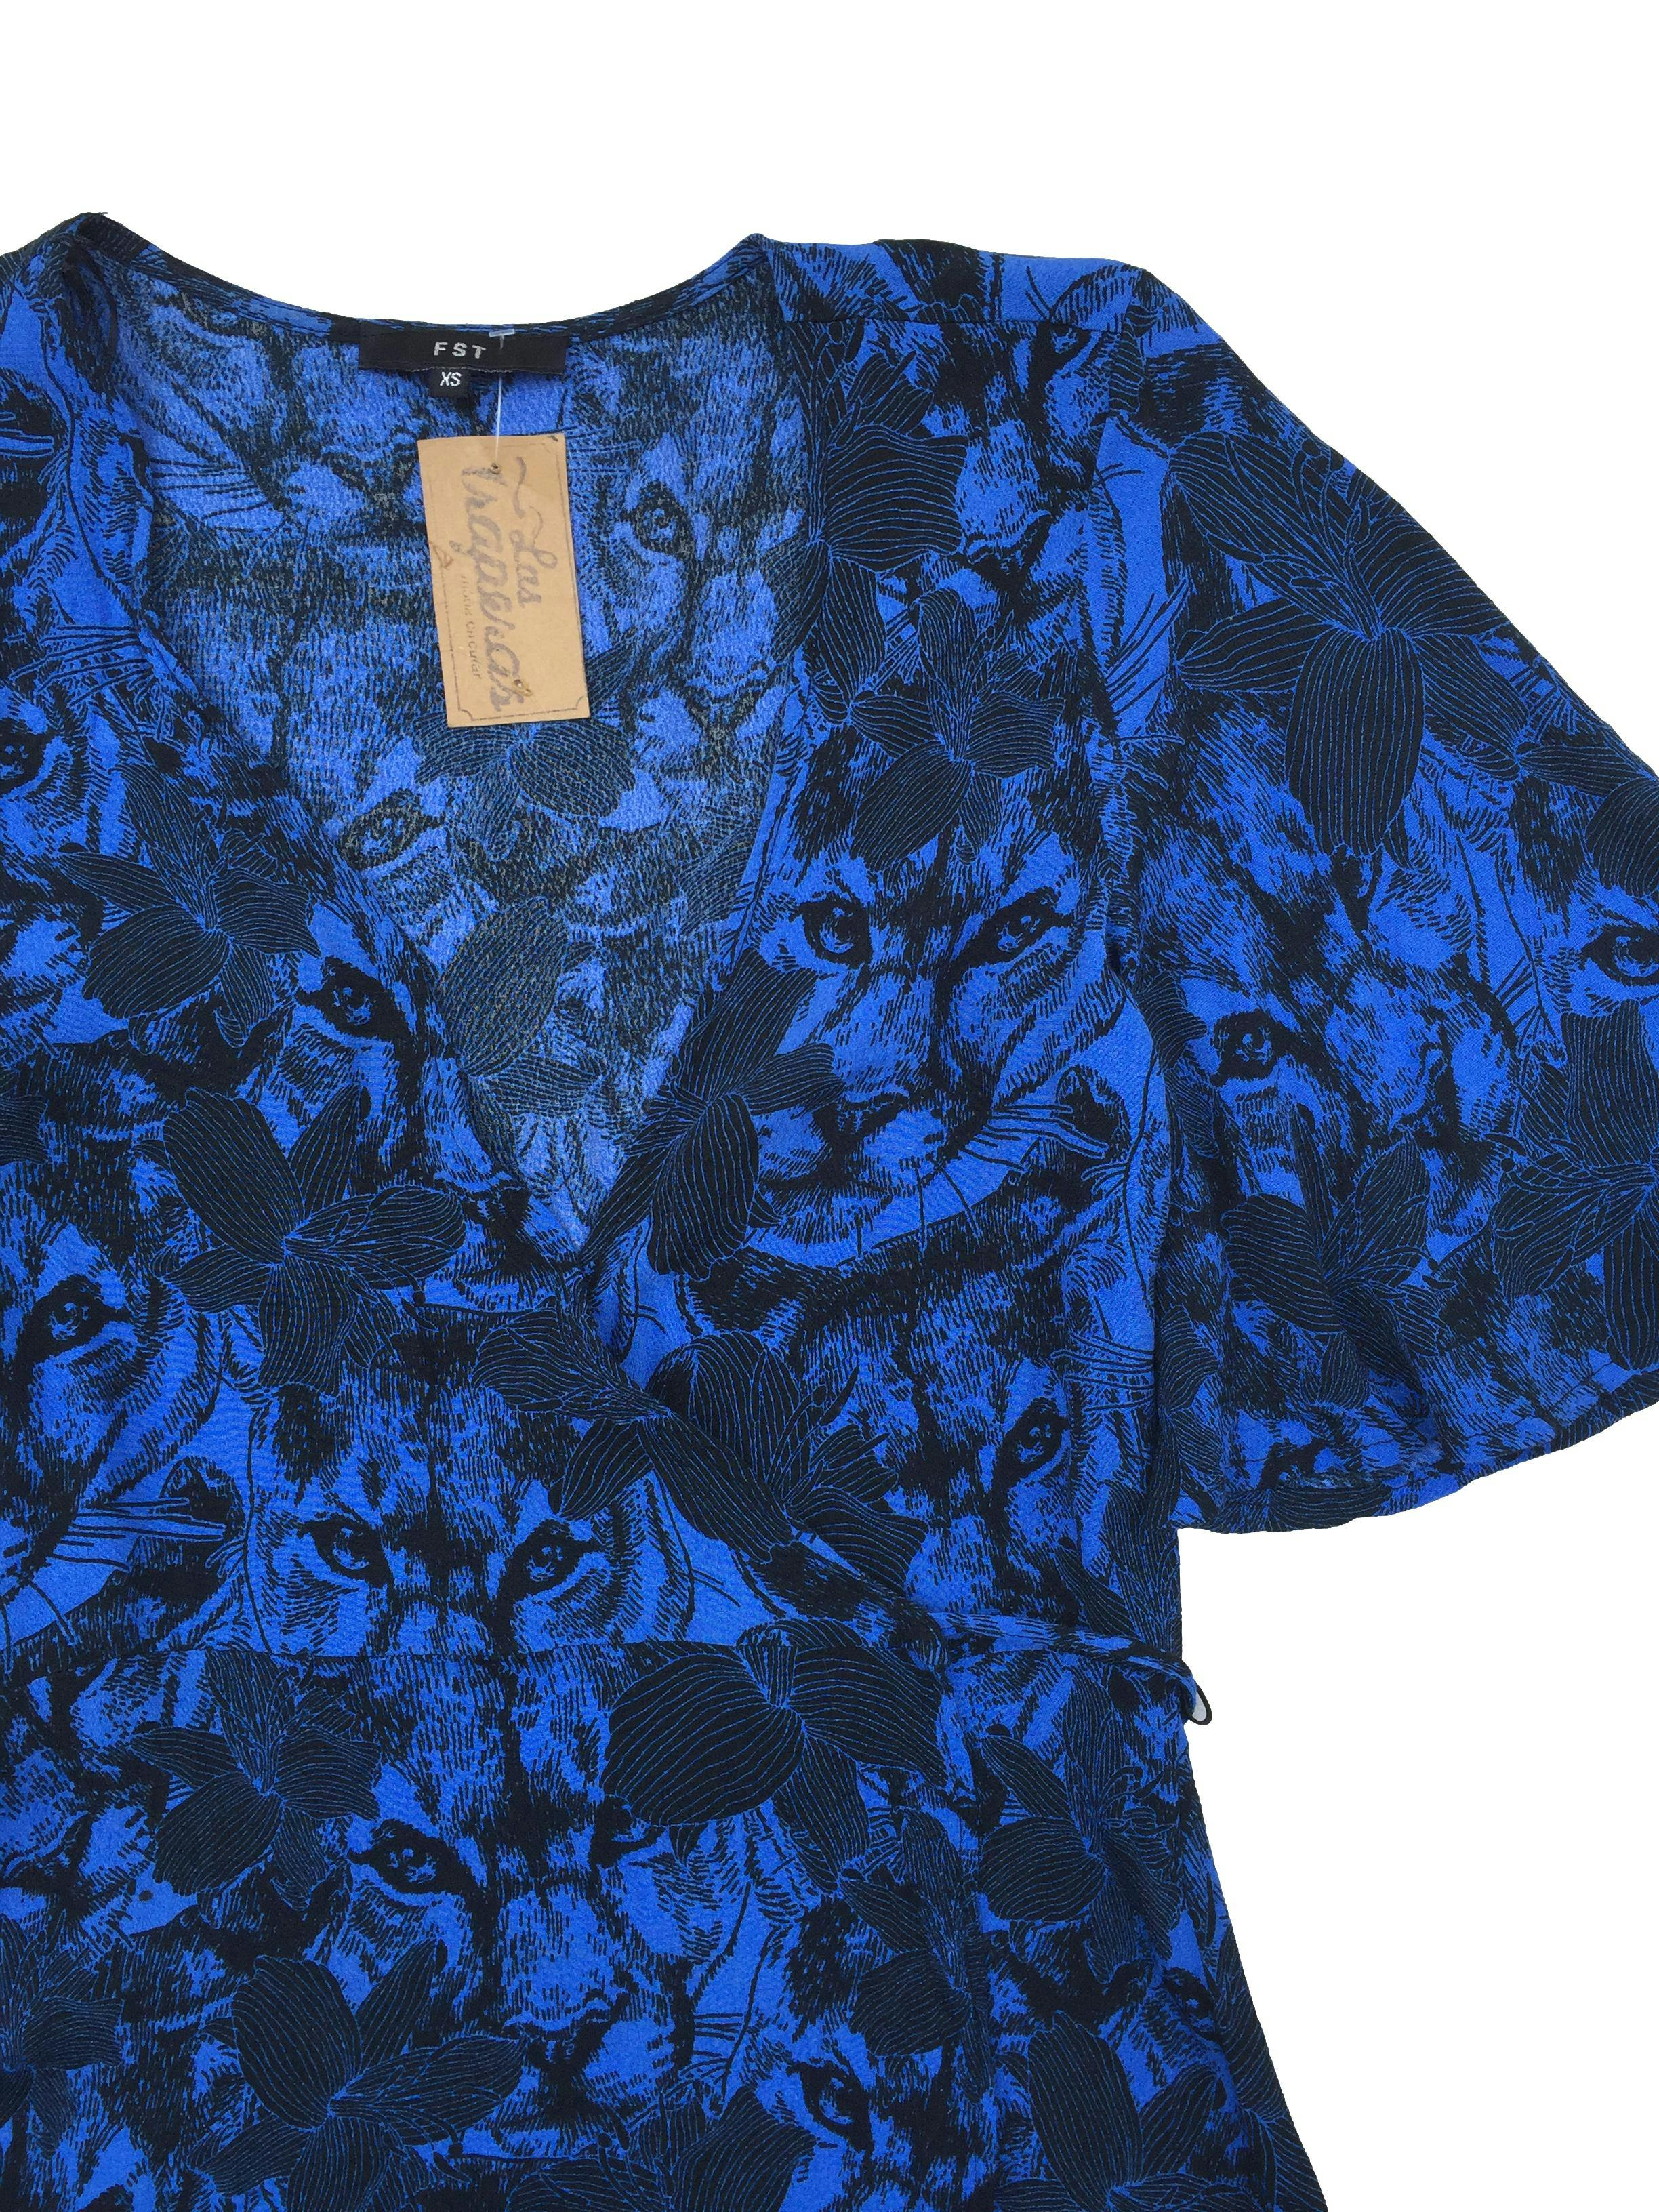 Vestido FST envolvente, estampado de puma y flores en negro y azul, tiras para anudar en la cintura. Busto: 85cm, Largo: 85cm